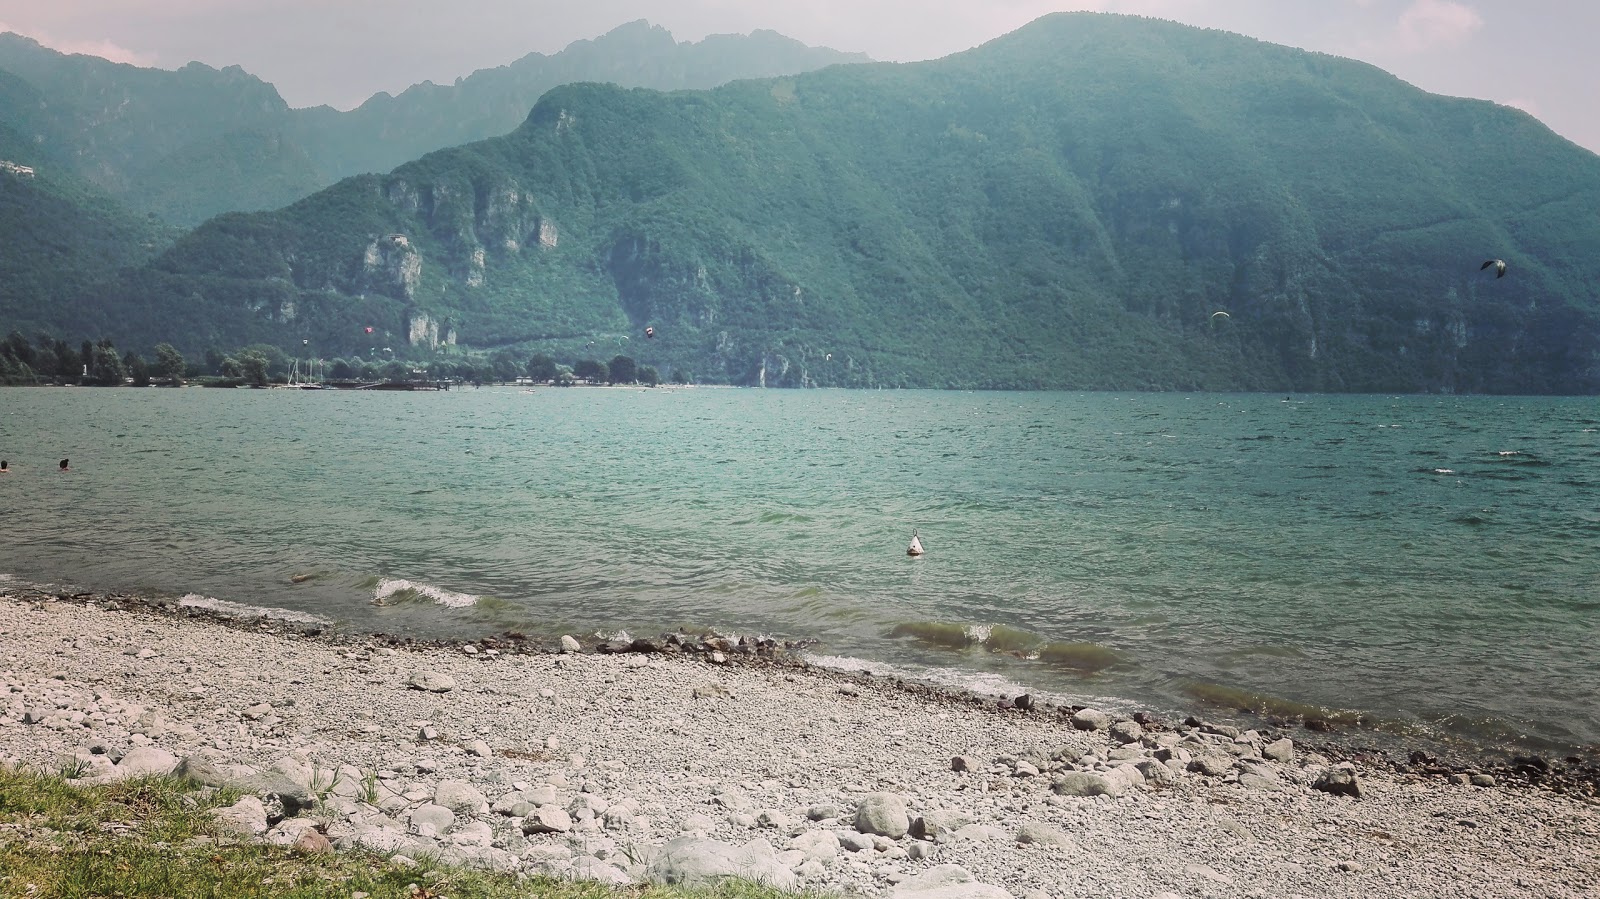 Valokuva Spiaggia Bagolinoista. sisältäen tilava ranta